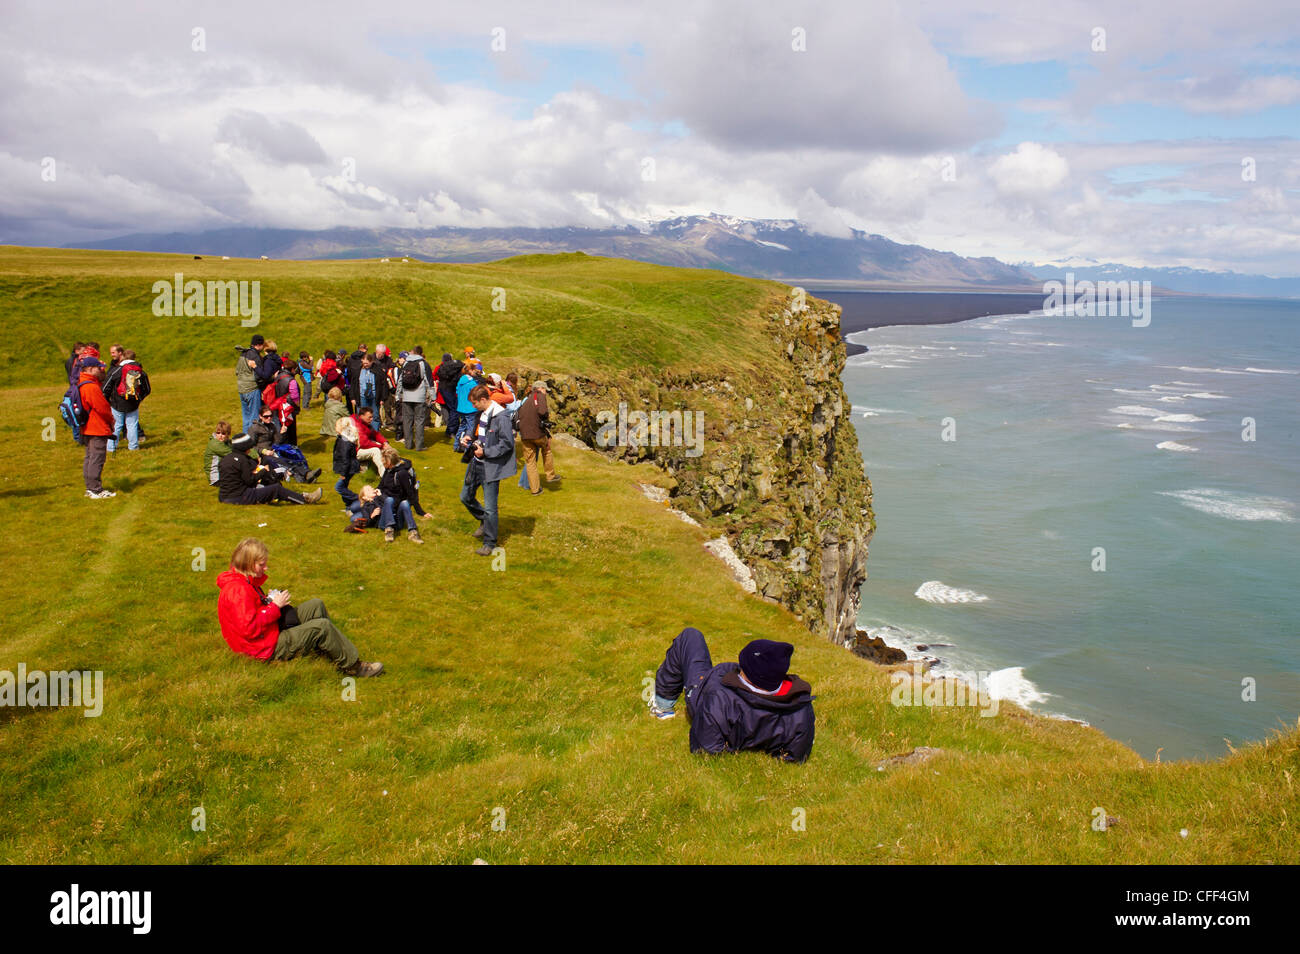 Les touristes à la recherche des colonies de macareux niche dans les falaises de Vik, l'Islande, les régions polaires Banque D'Images